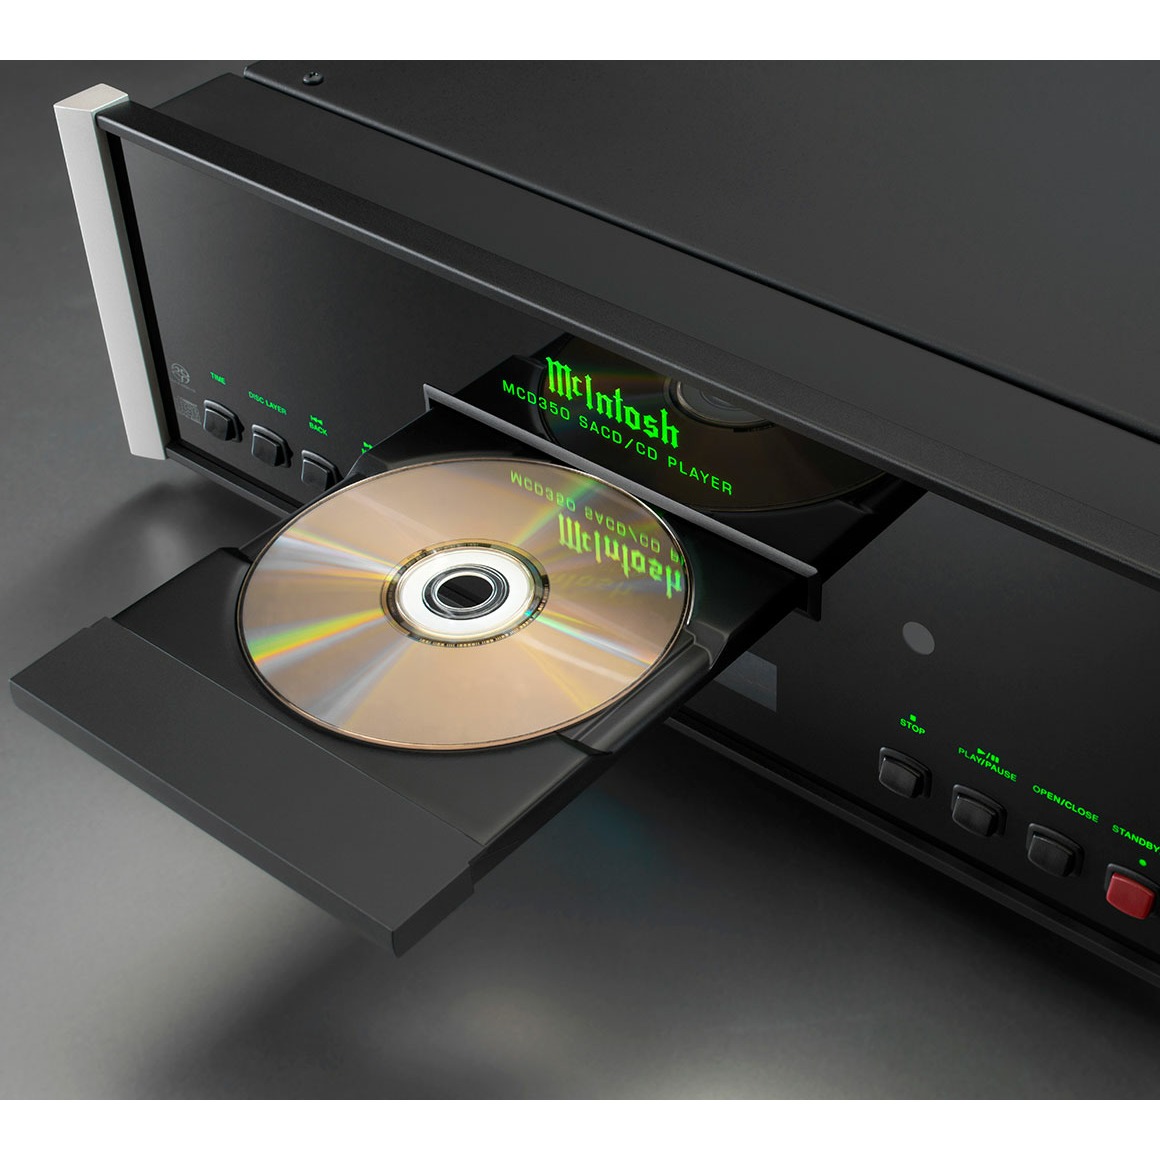 Звуковой компакт. CD-проигрыватель MCINTOSH mcd350. MCINTOSH ma8900. SACD — super Audio CD. Тюнеры MCINTOSH mr87.